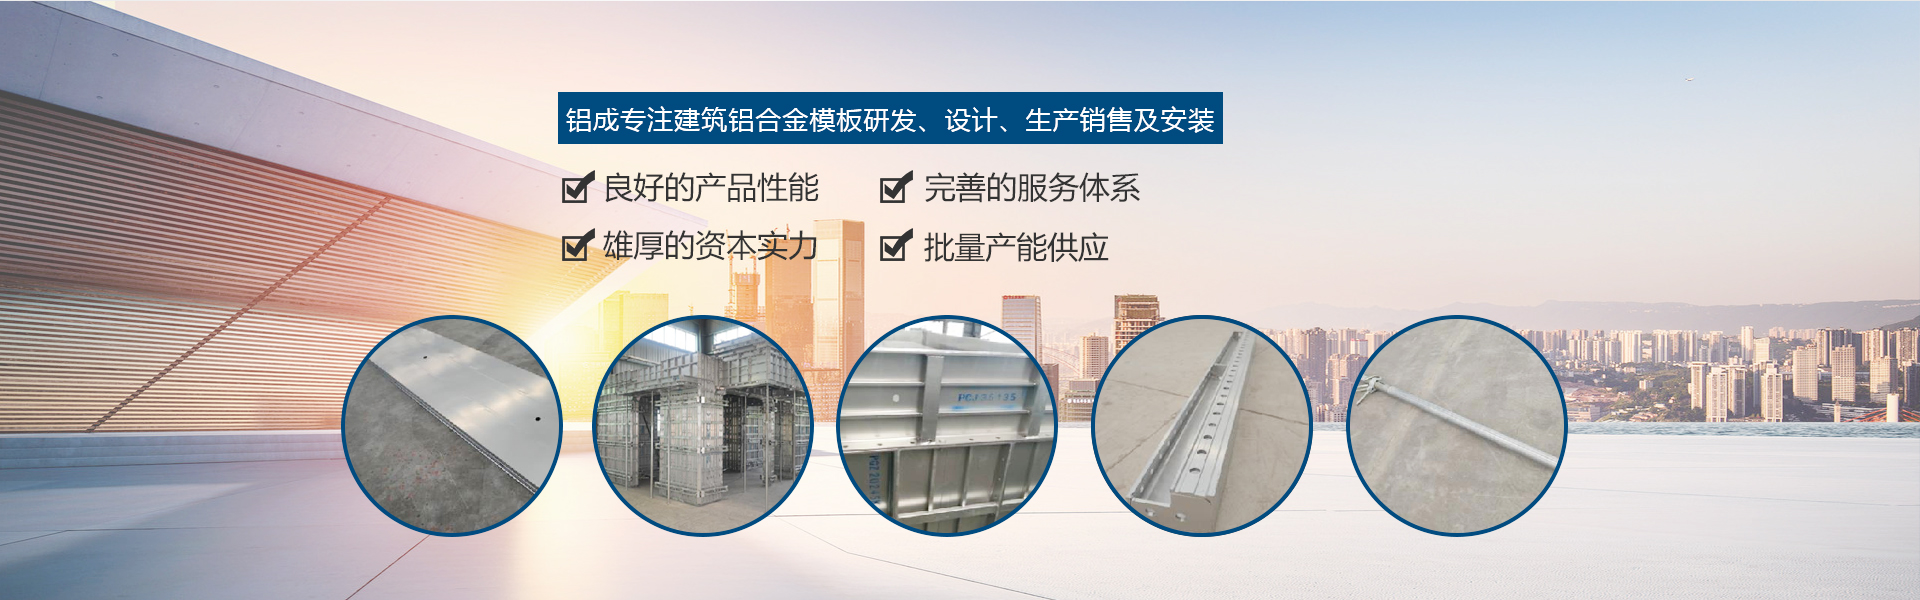 重庆建筑铝模板安装